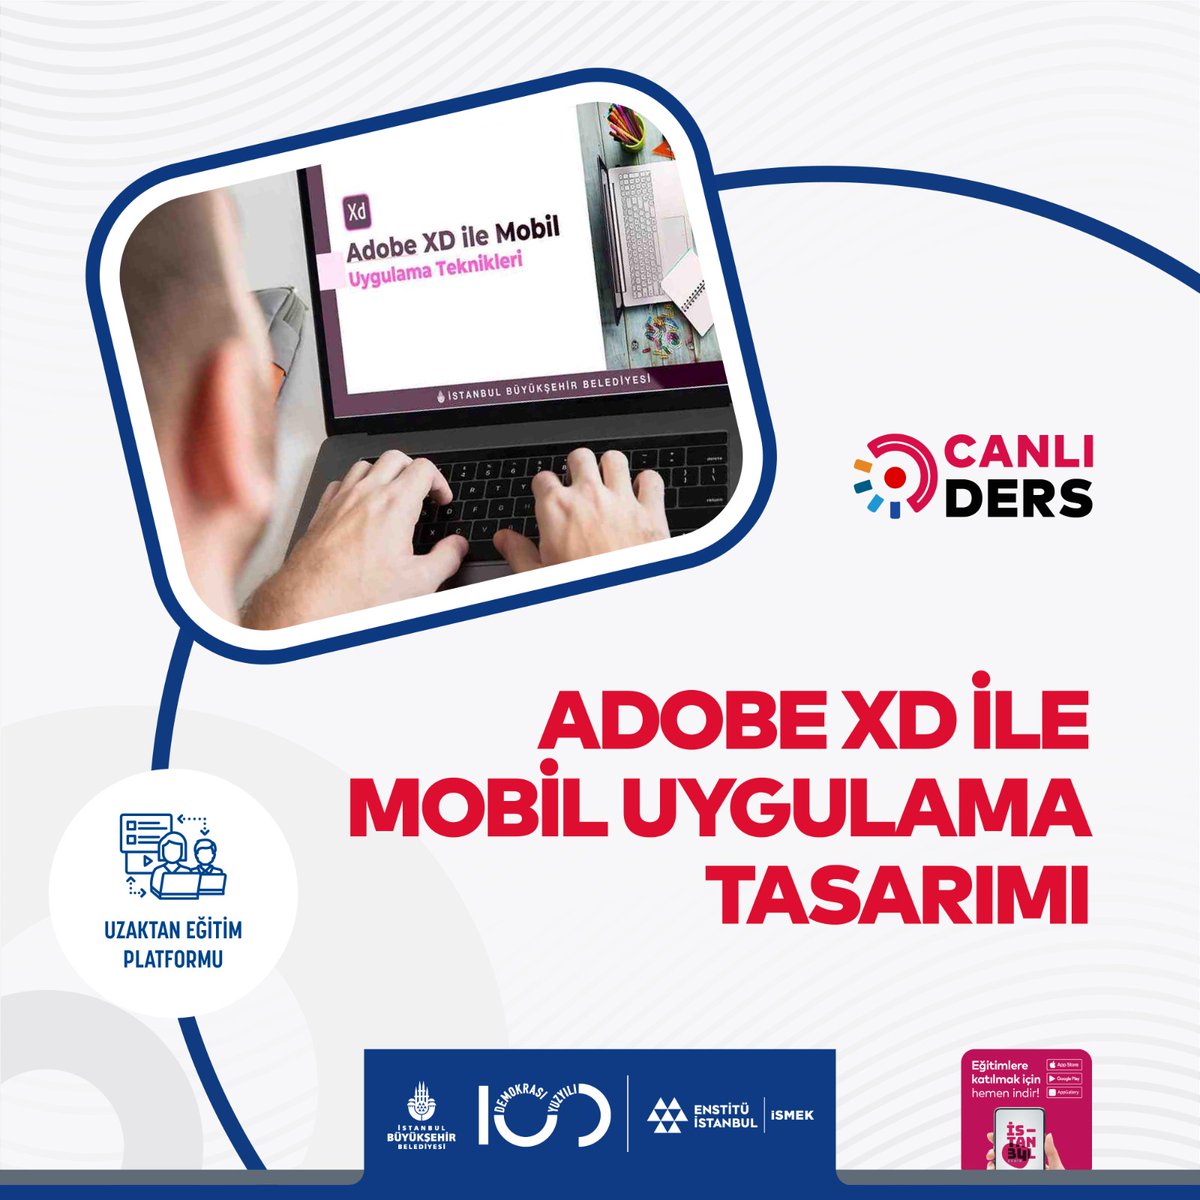 Uzaktan Eğitim Merkezimizde;
📌 Temel Bağlama (Bağlama Düzeni)
📌Gayrimenkul Mevzuatı
📌Adobe XD ile Mobil Uygulama Tasarımı
📌Yabancılar İçin Türkçe A1-A2 Seviyesi Konuşma Kulübü
Programlarına başvurular açıldı.